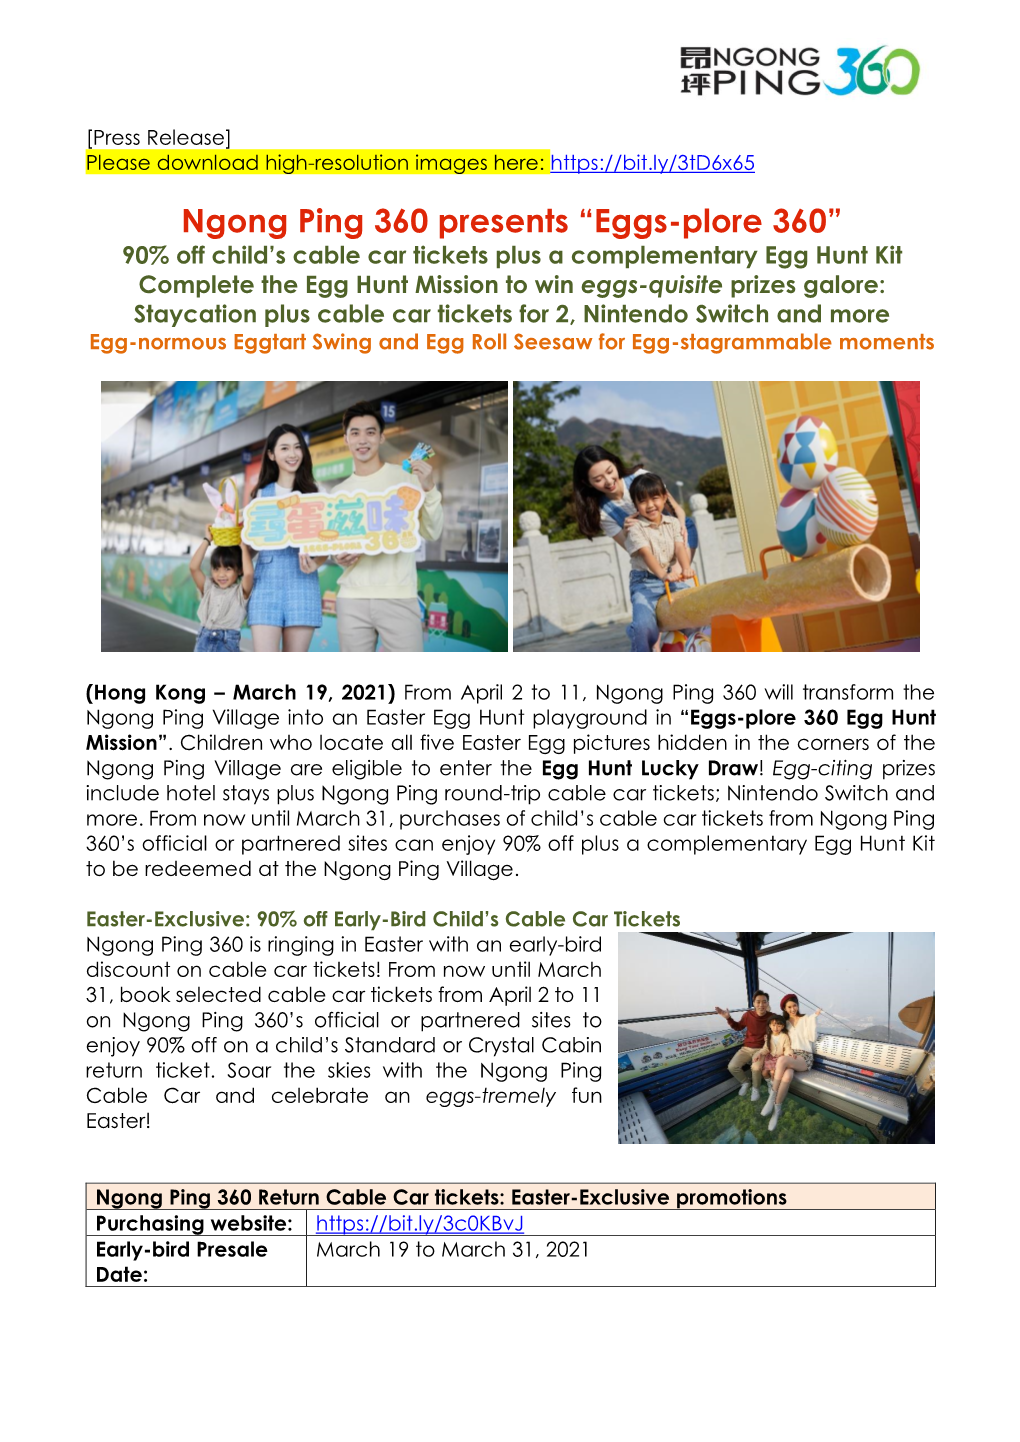 Ngong Ping 360 Presents “Eggs-Plore 360”